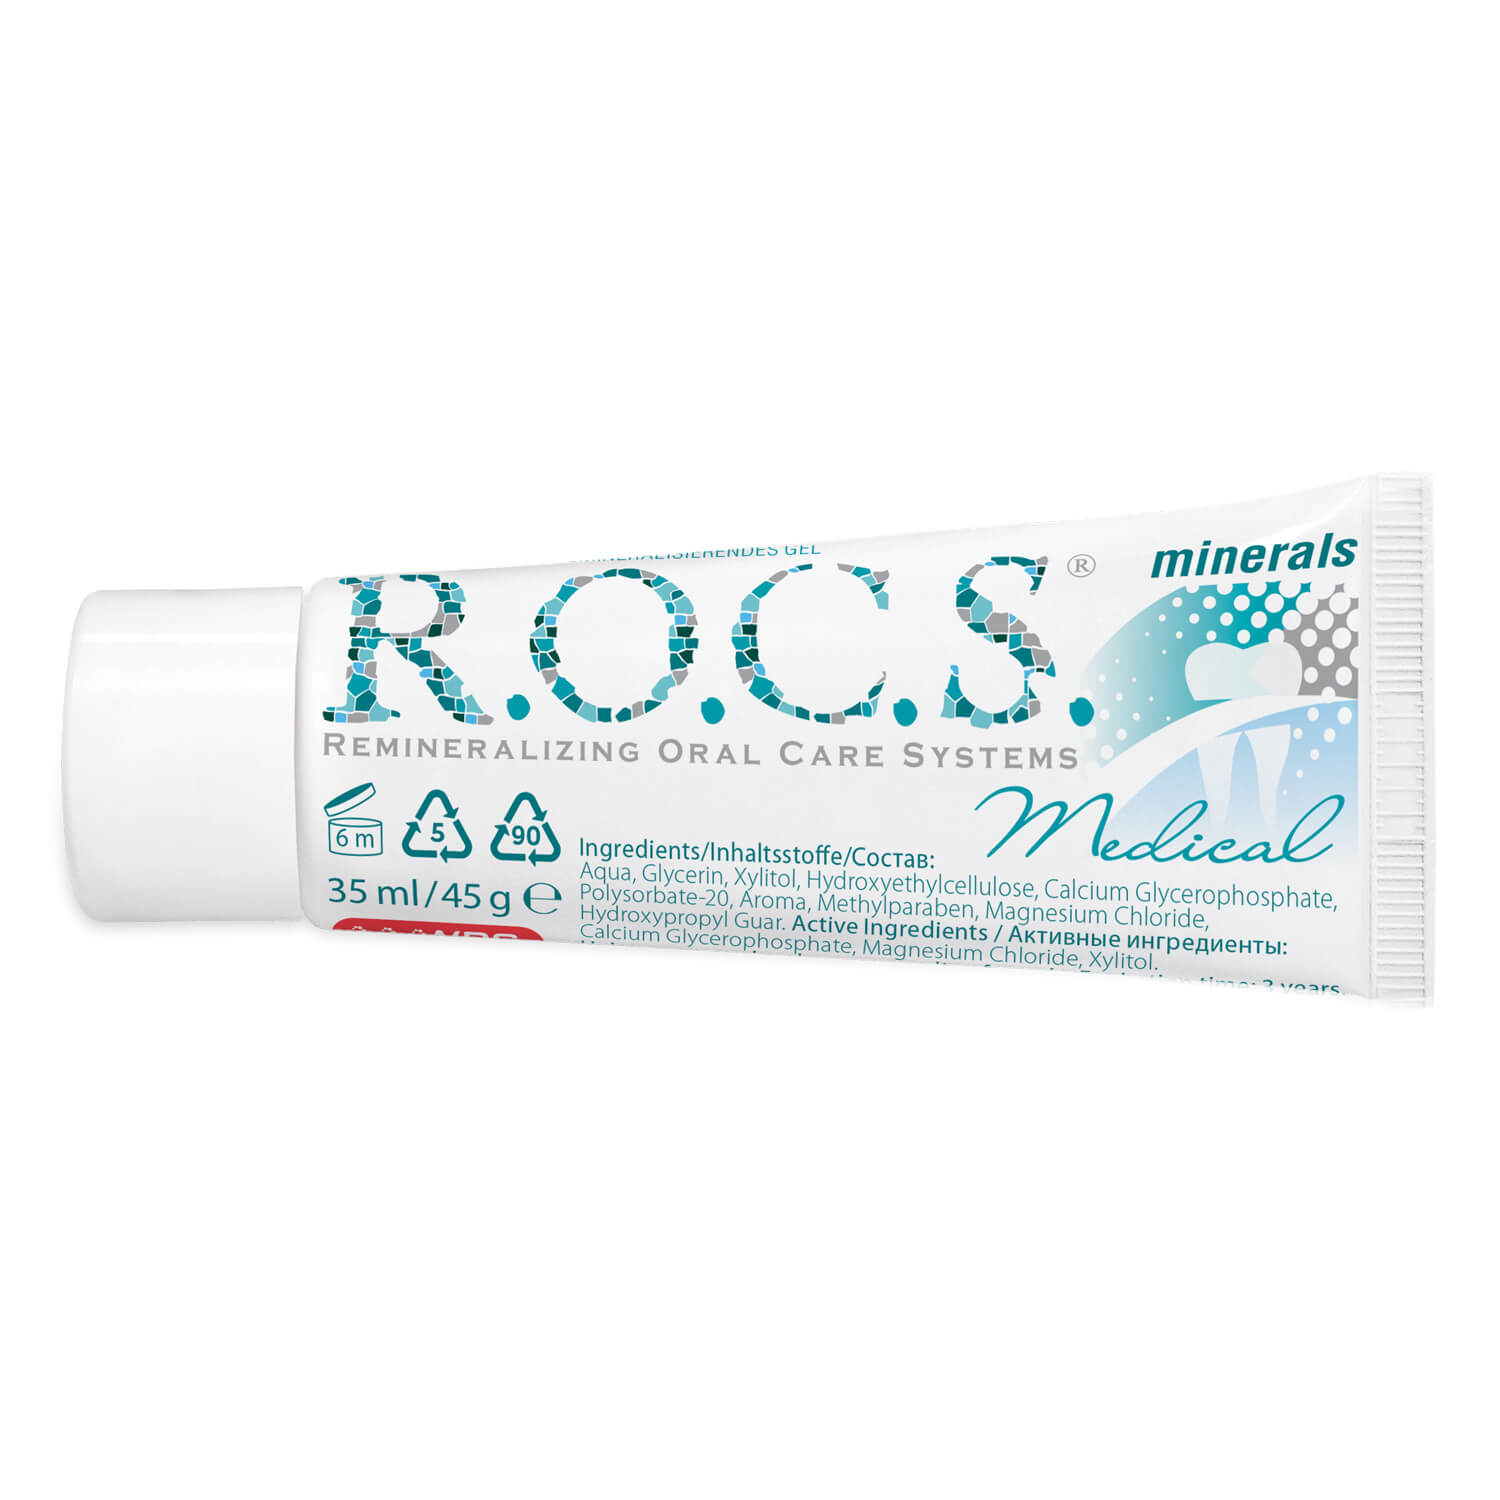 Гель для зубов рокс купить. Рокс минерал Медикал гель. R.O.C.S. Medical гель реминерализующий. Rocs Medical Minerals гель реминерализирующий. Зубная паста Rocs Medical Minerals.